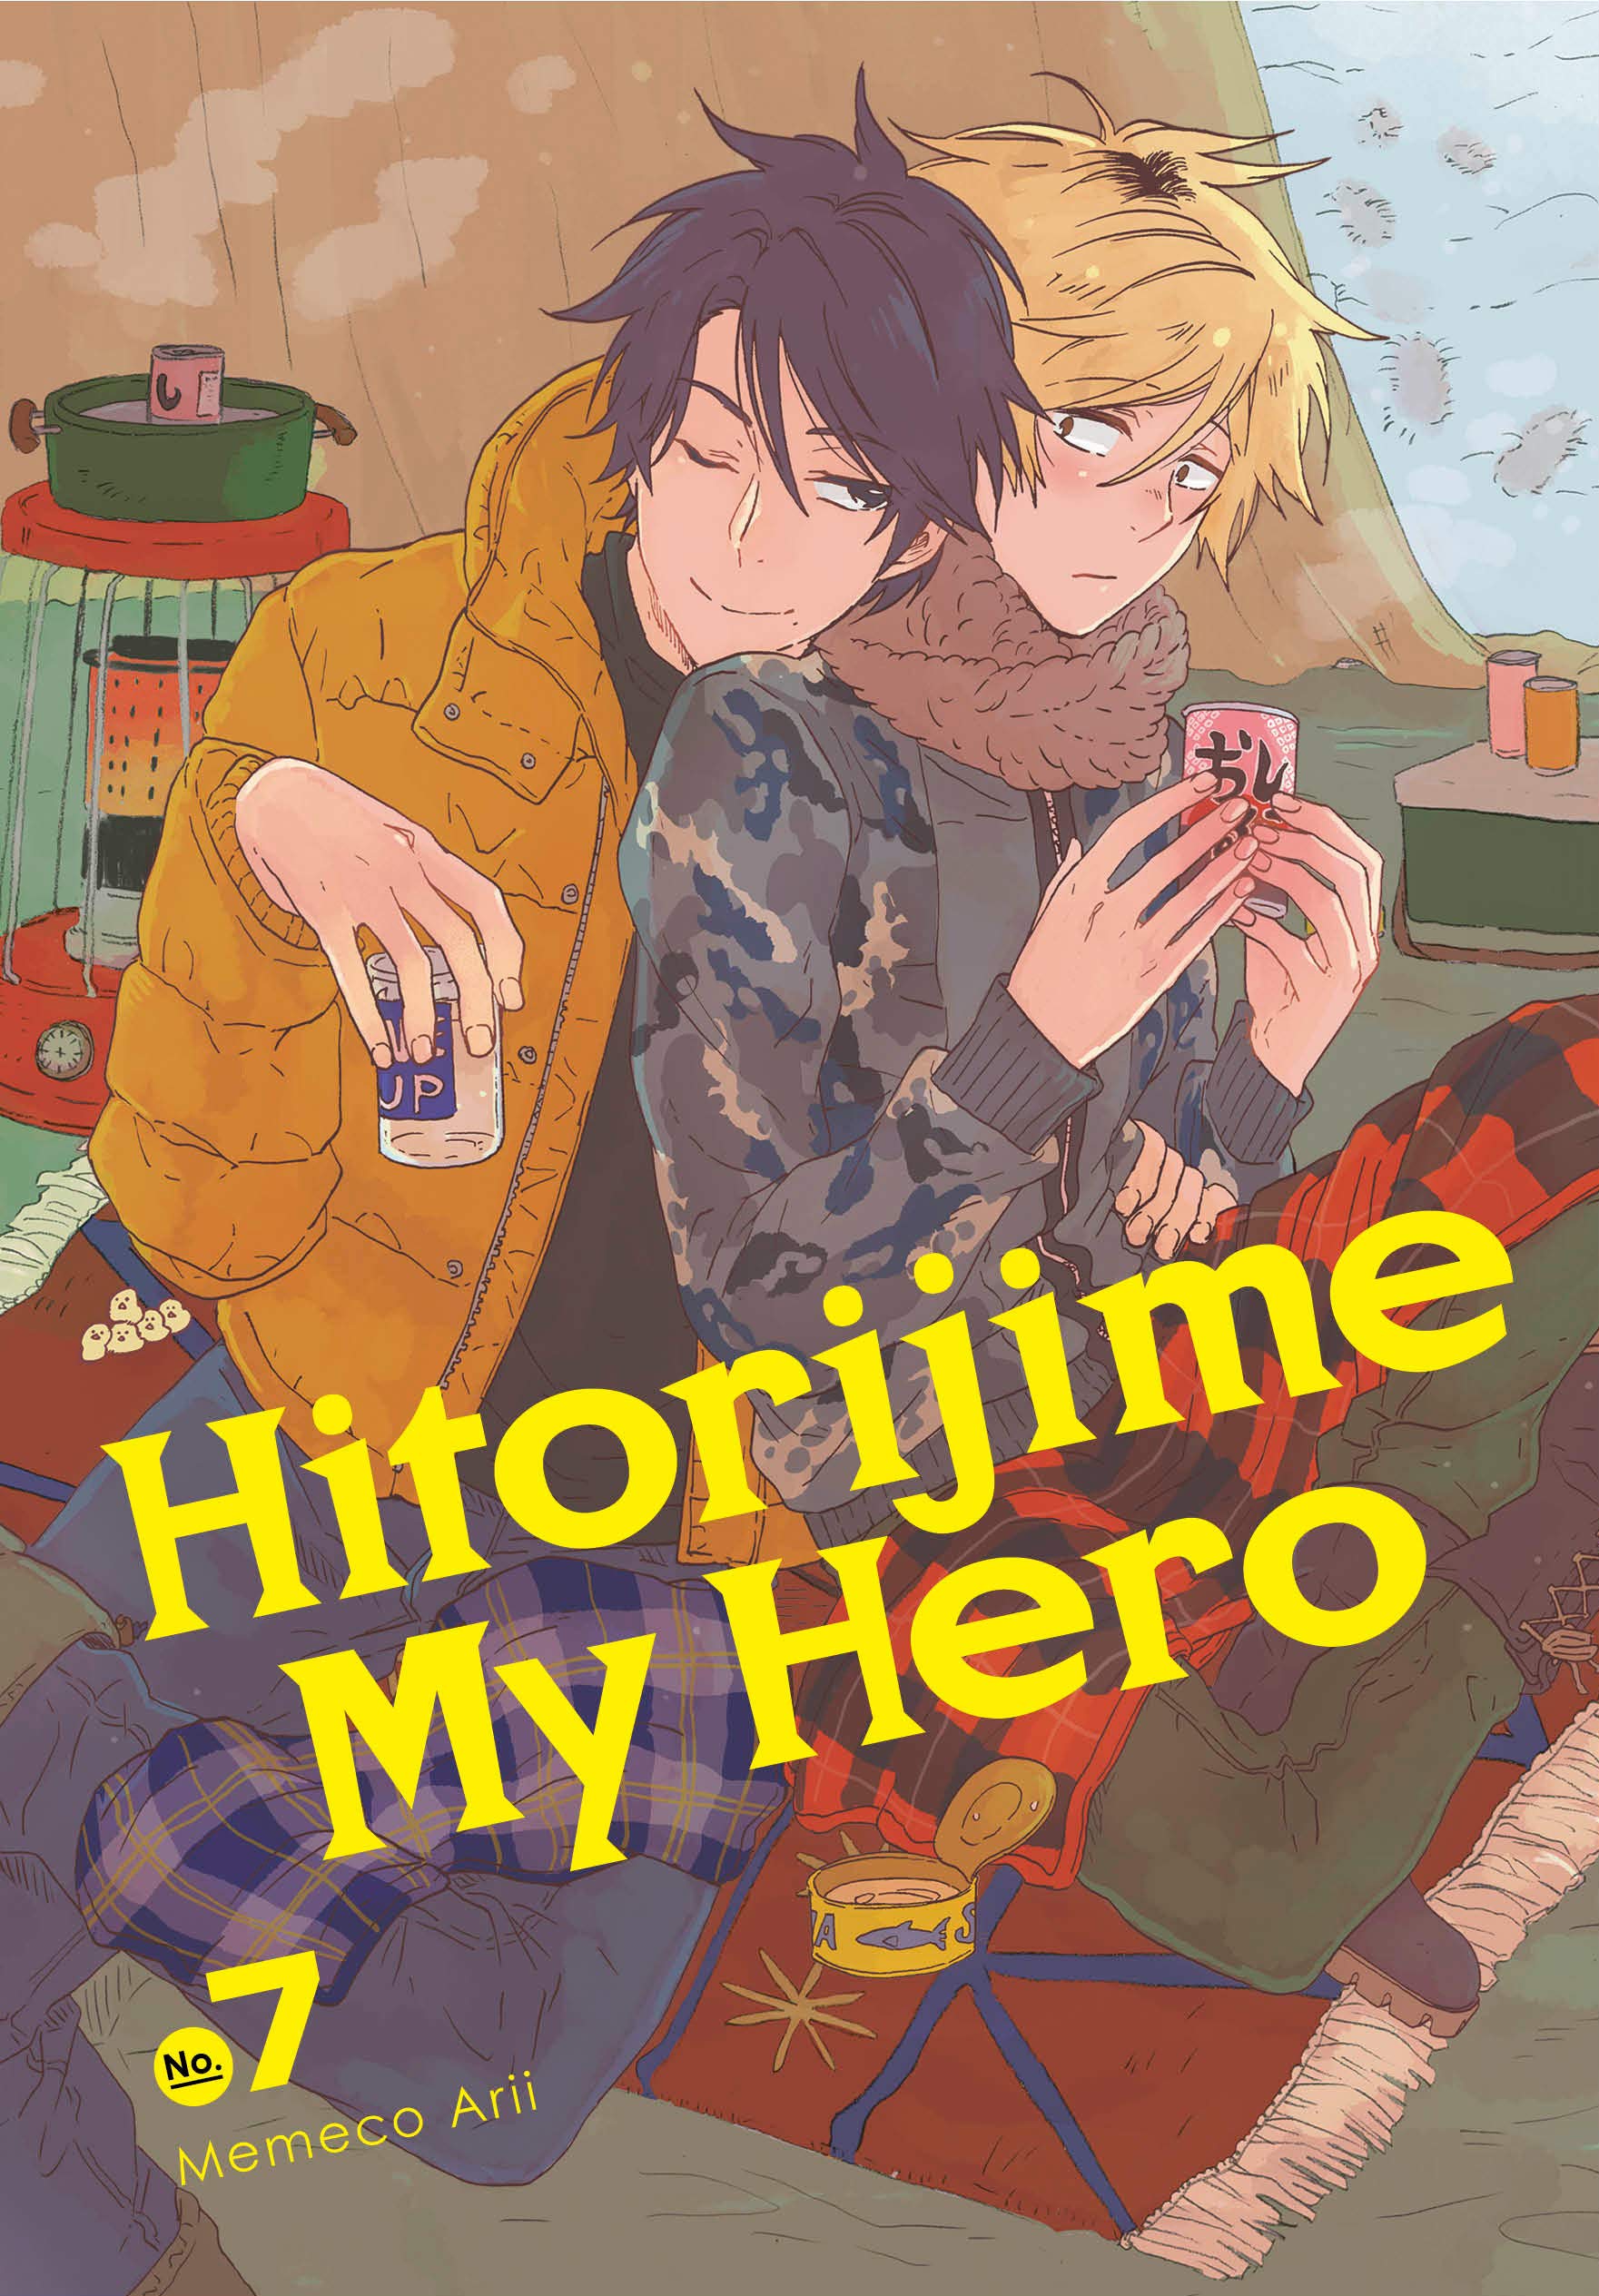 Hitorijime My Hero - Volume 7 | Memeco Arii